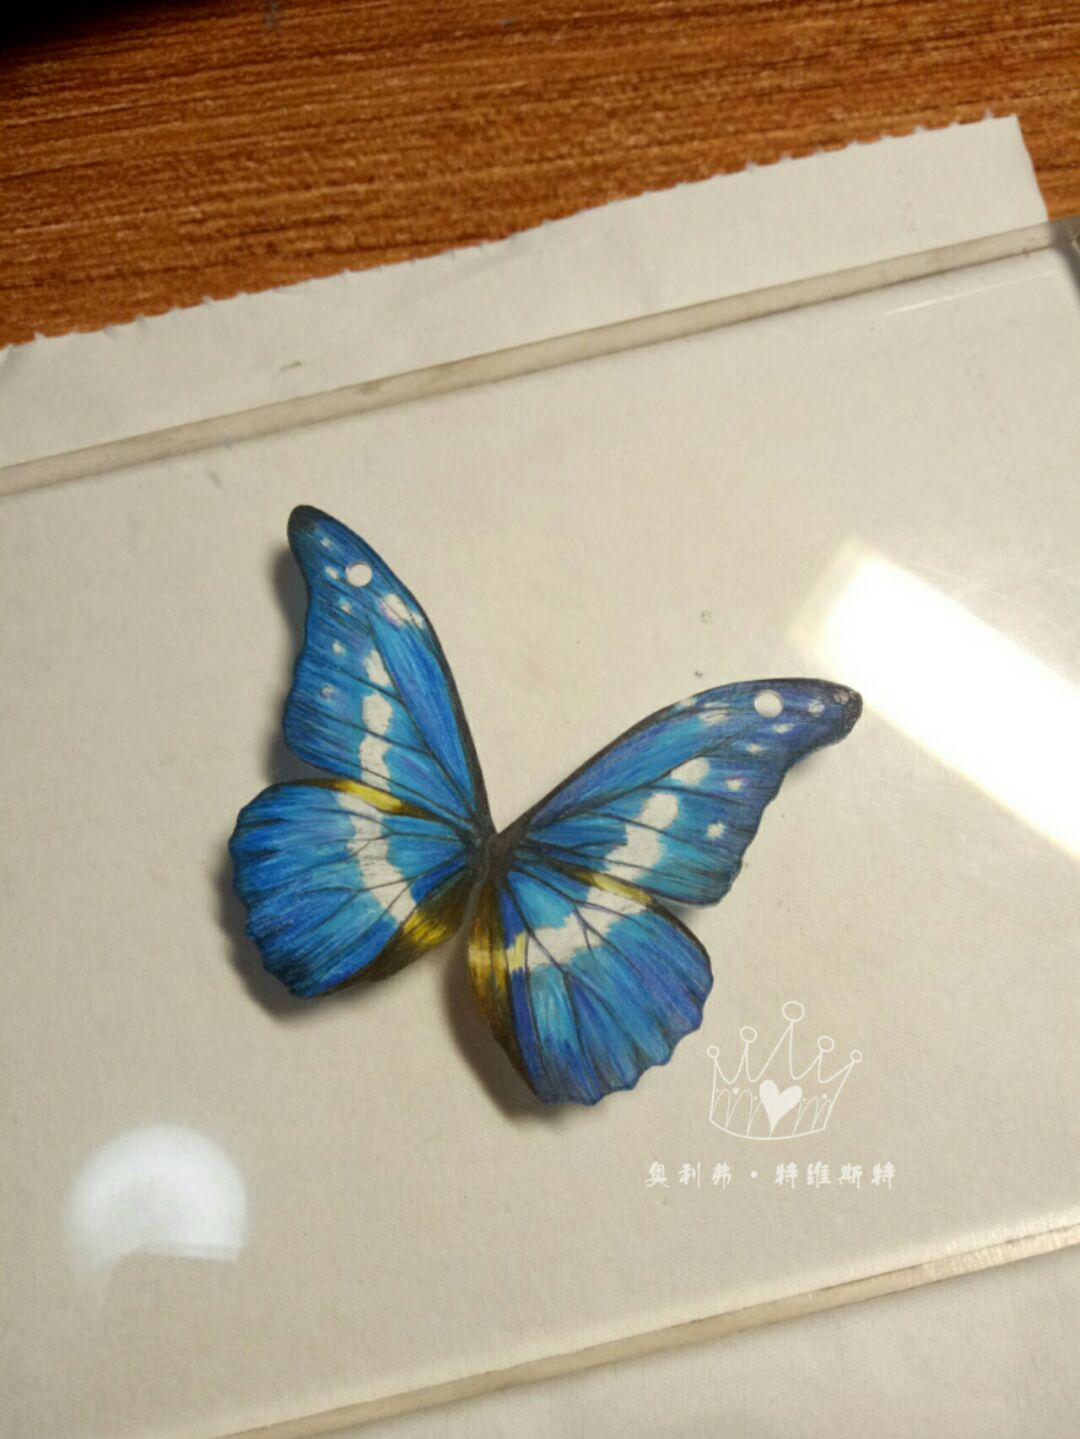 光明女神闪蝶，别名:海伦娜闪蝶 、蓝色多瑙河蝶。